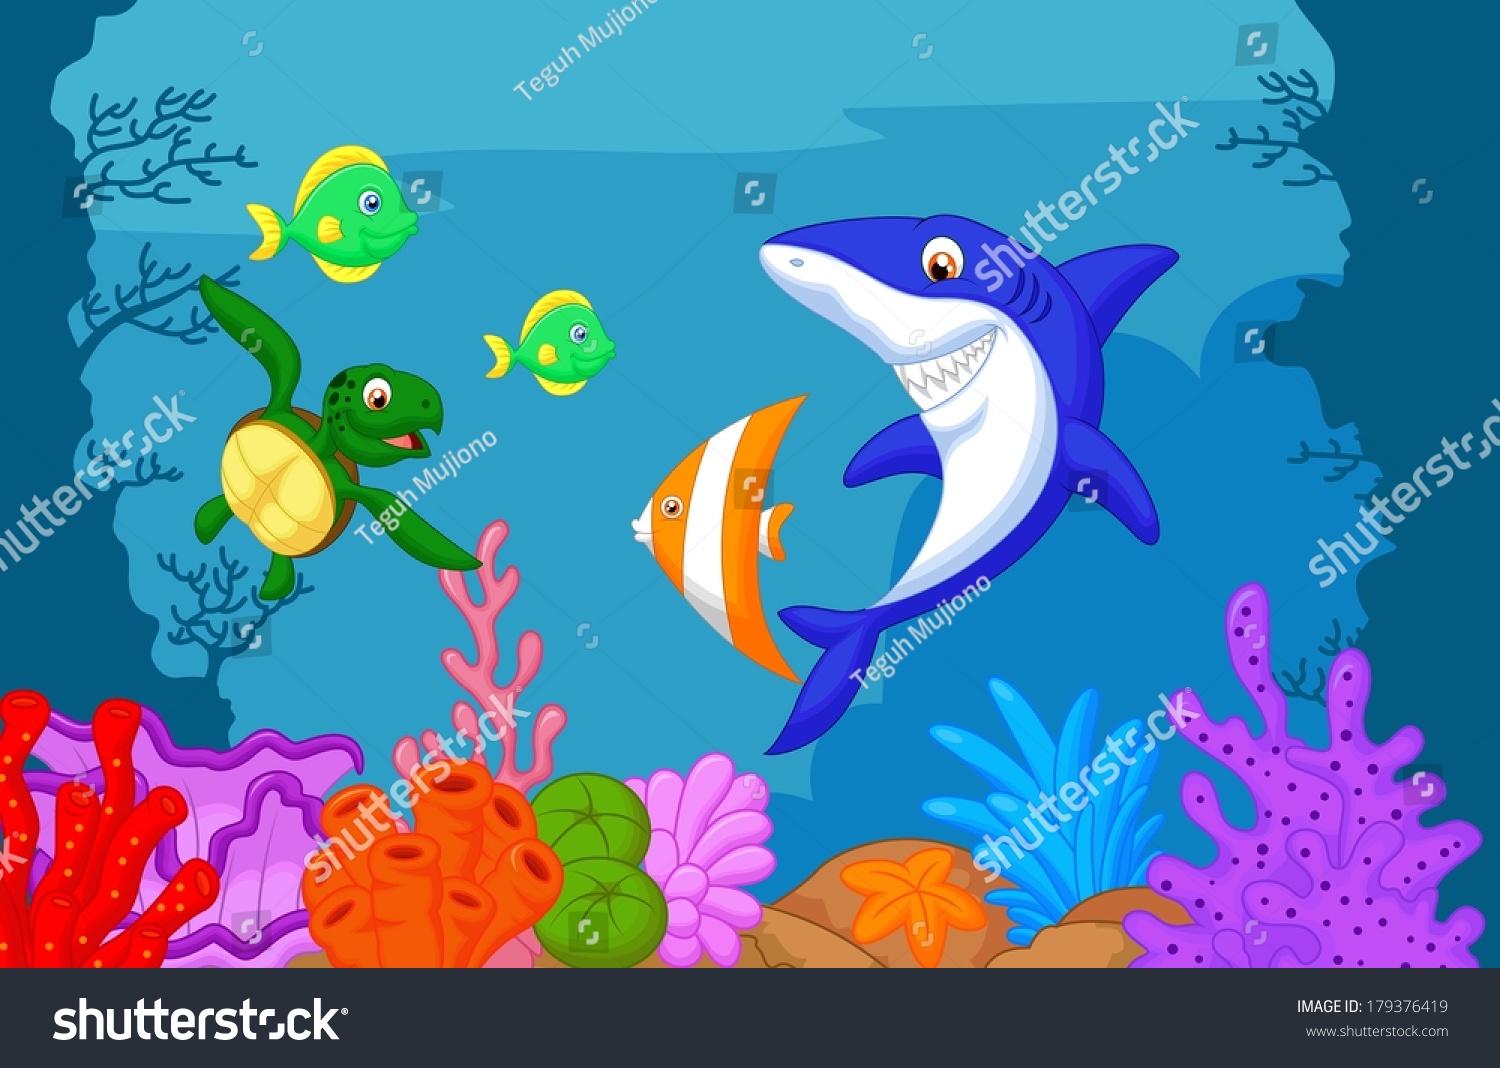 Sea Life Cartoon Stock Illustration 179376419 | Shutterstock